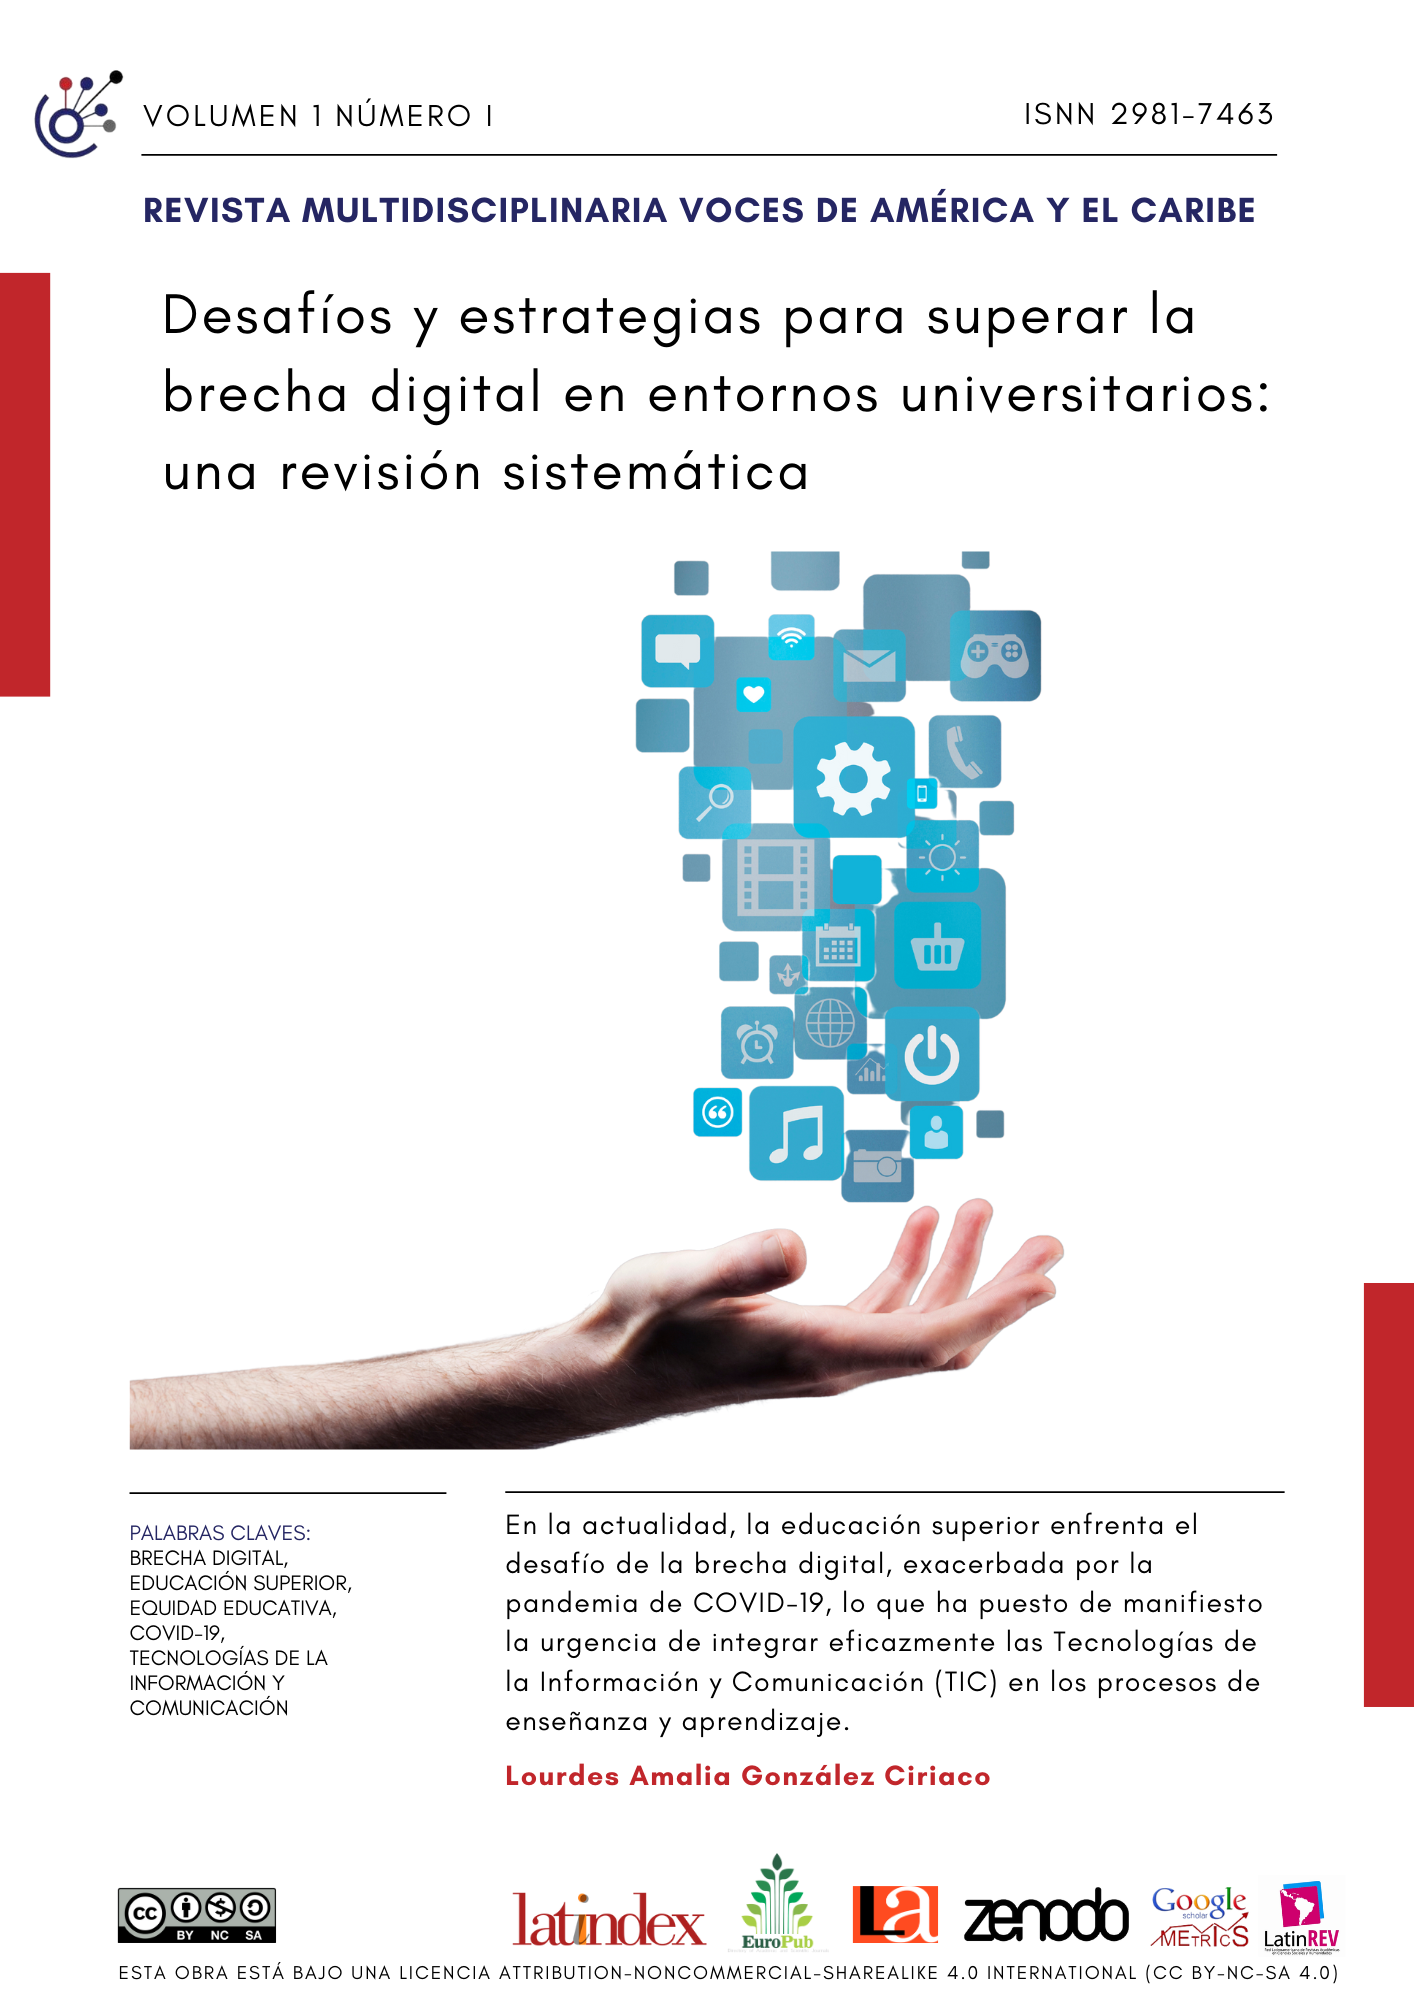 Desafíos y estrategias para superar la brecha digital en entornos universitarios: una revisión sistemática